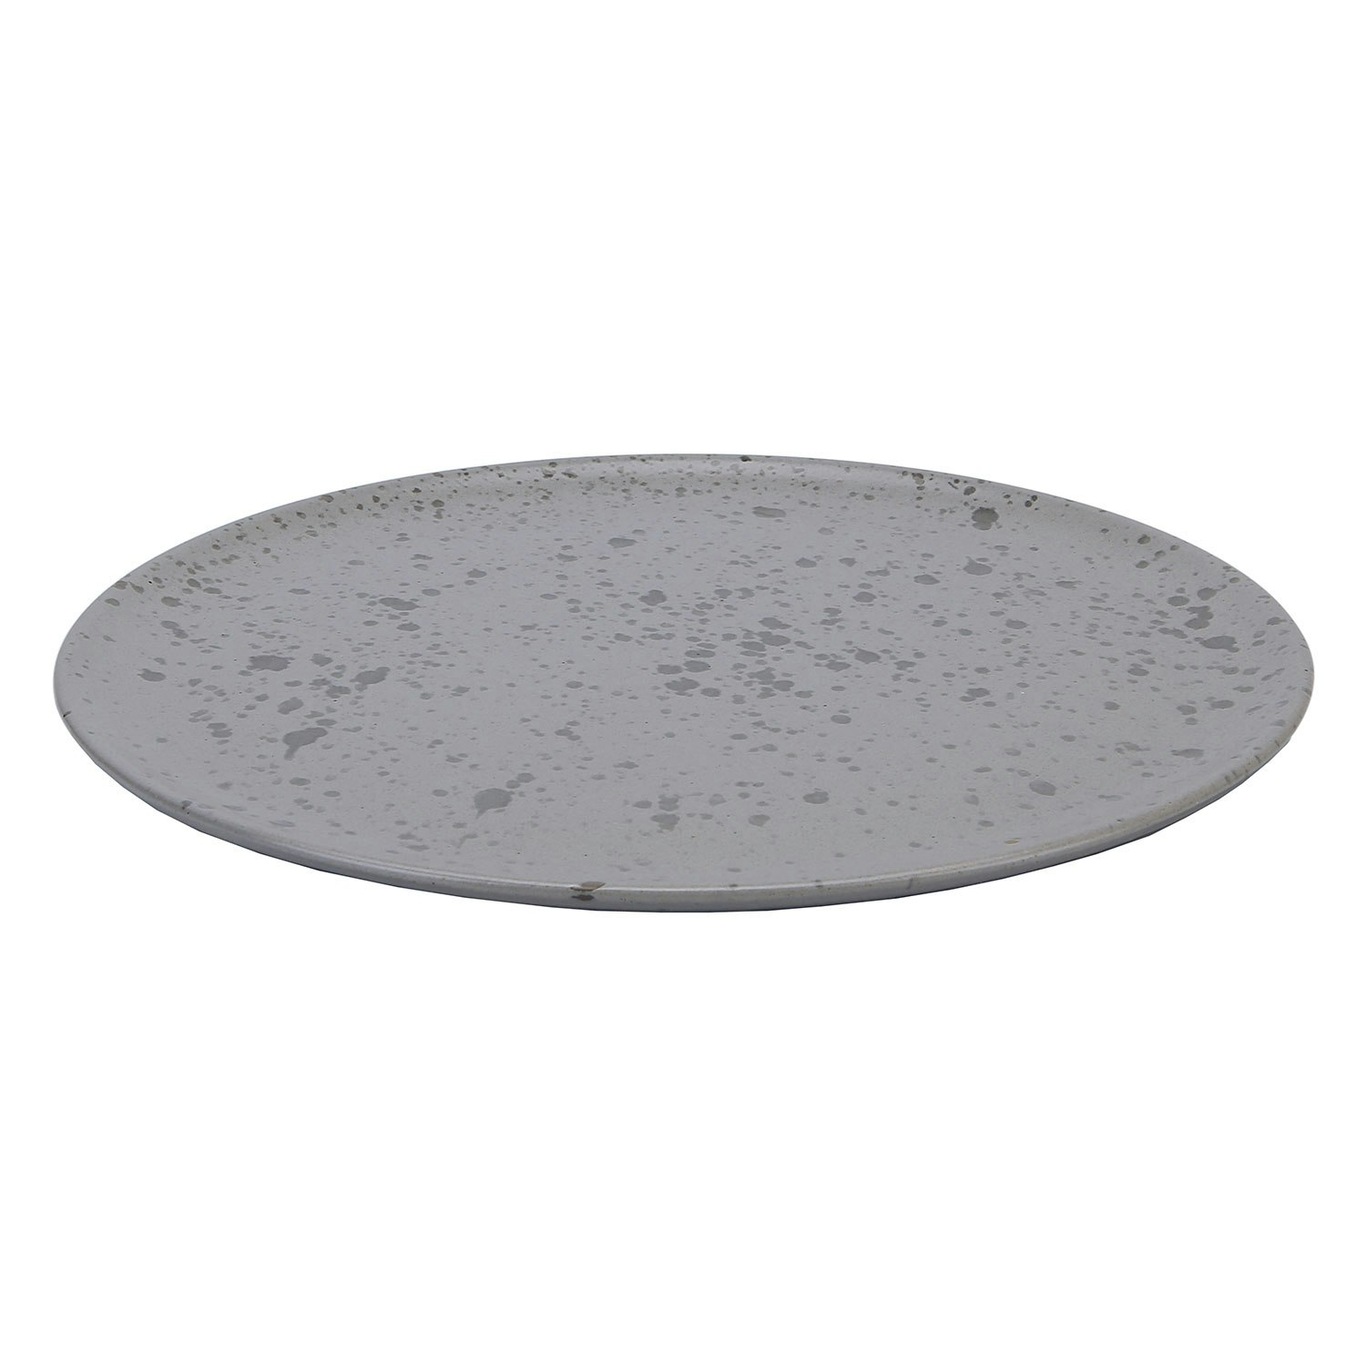 Plate - @ Aida Raw RoyalDesign Grey 28 cm,